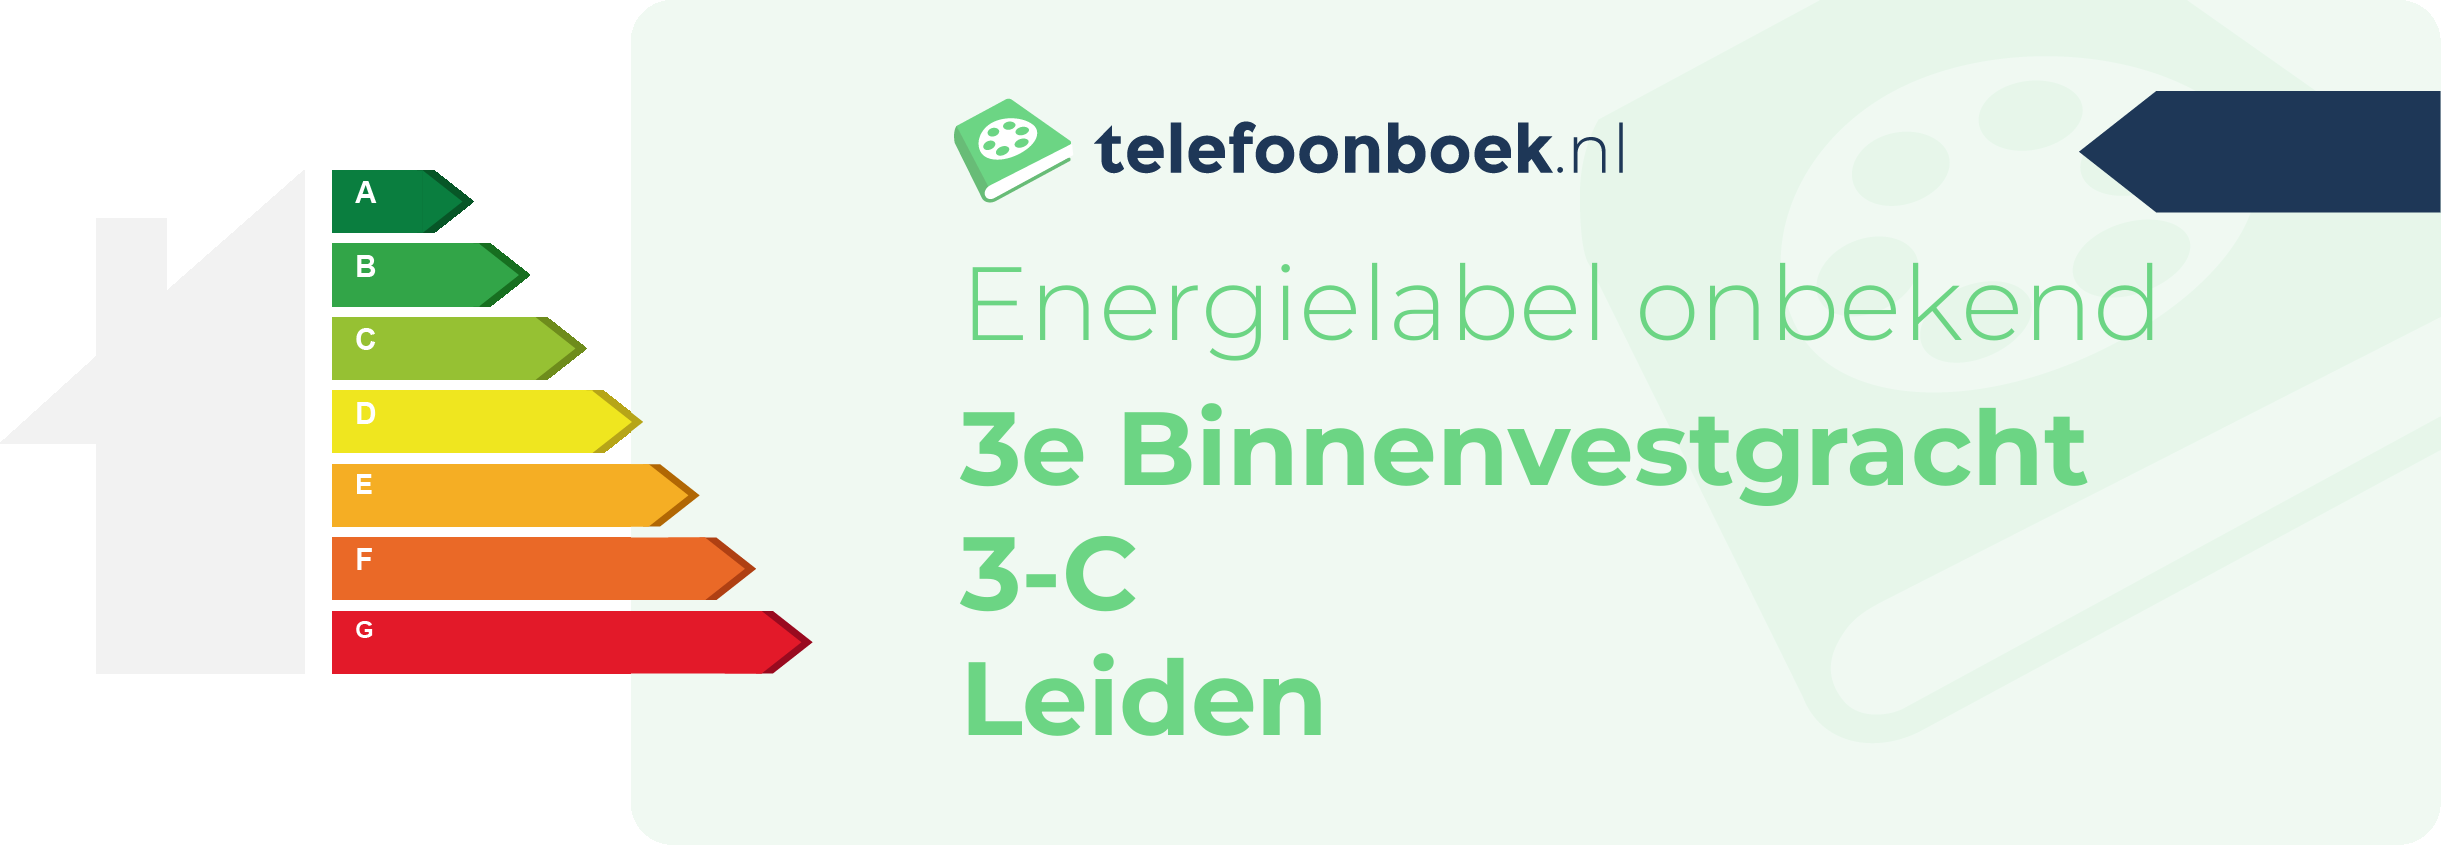 Energielabel 3e Binnenvestgracht 3-C Leiden